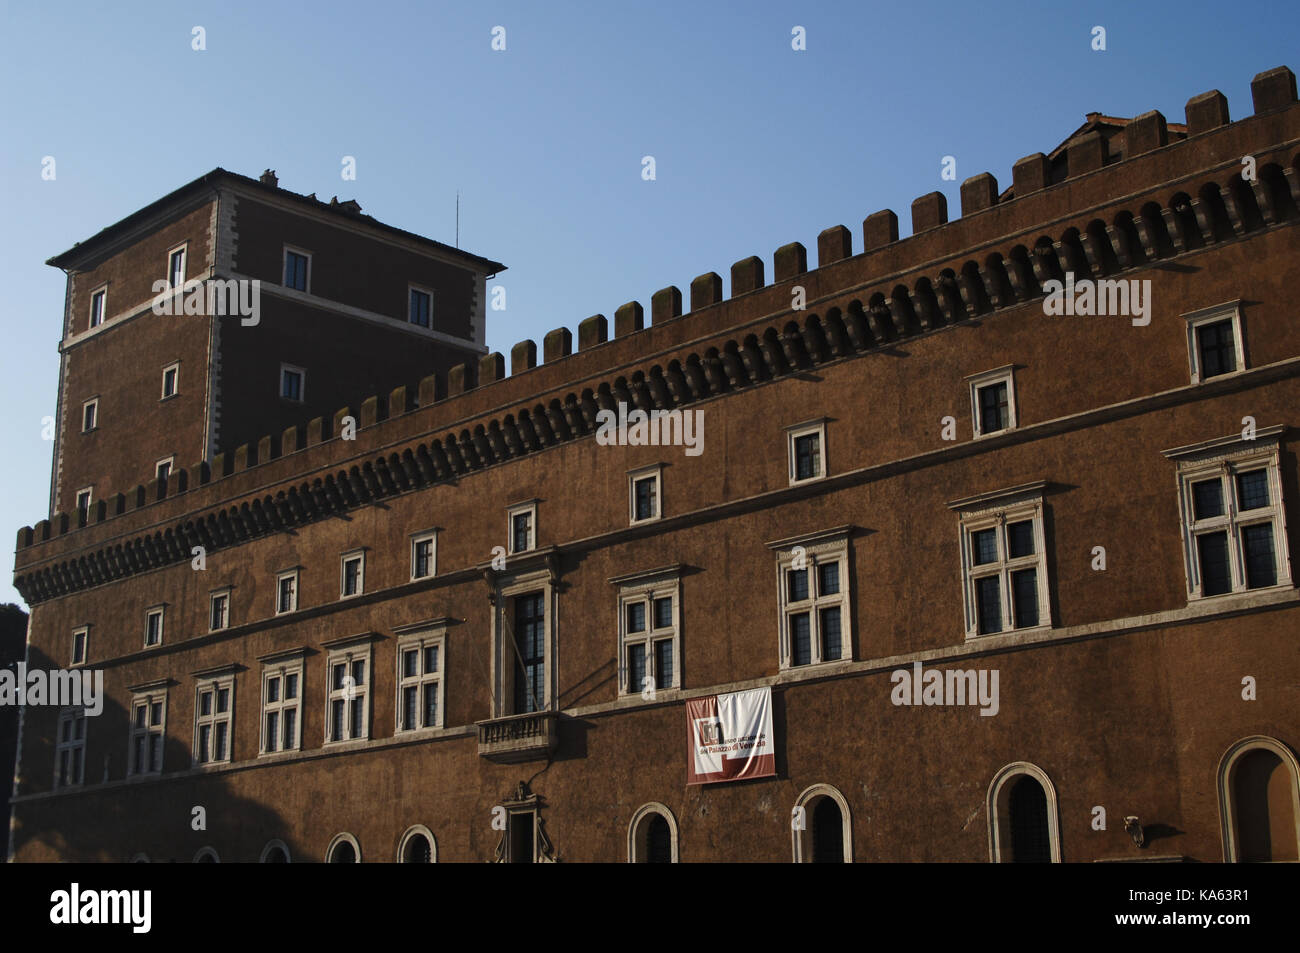 Italia Roma. Palacio de San Marcos o el palacio de Venezia. renacentista. Siglo 15. Foto de stock